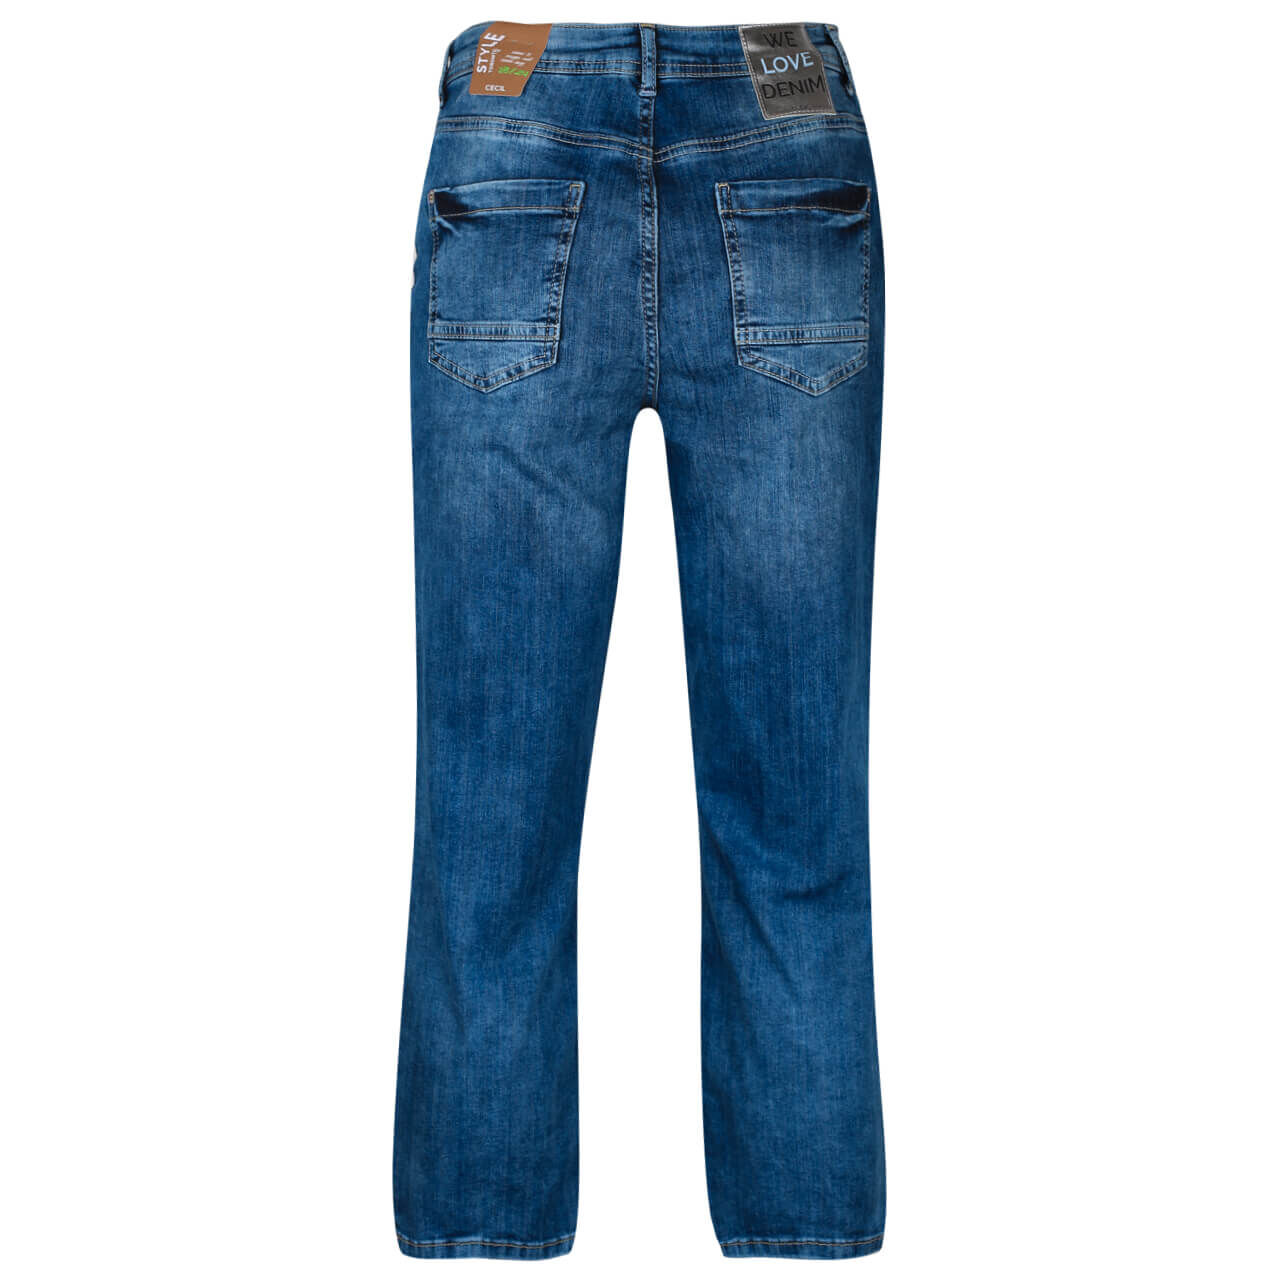 Cecil Toronto Capri Jeans für Damen in Dunkelblau angewaschen, FarbNr.: 10337